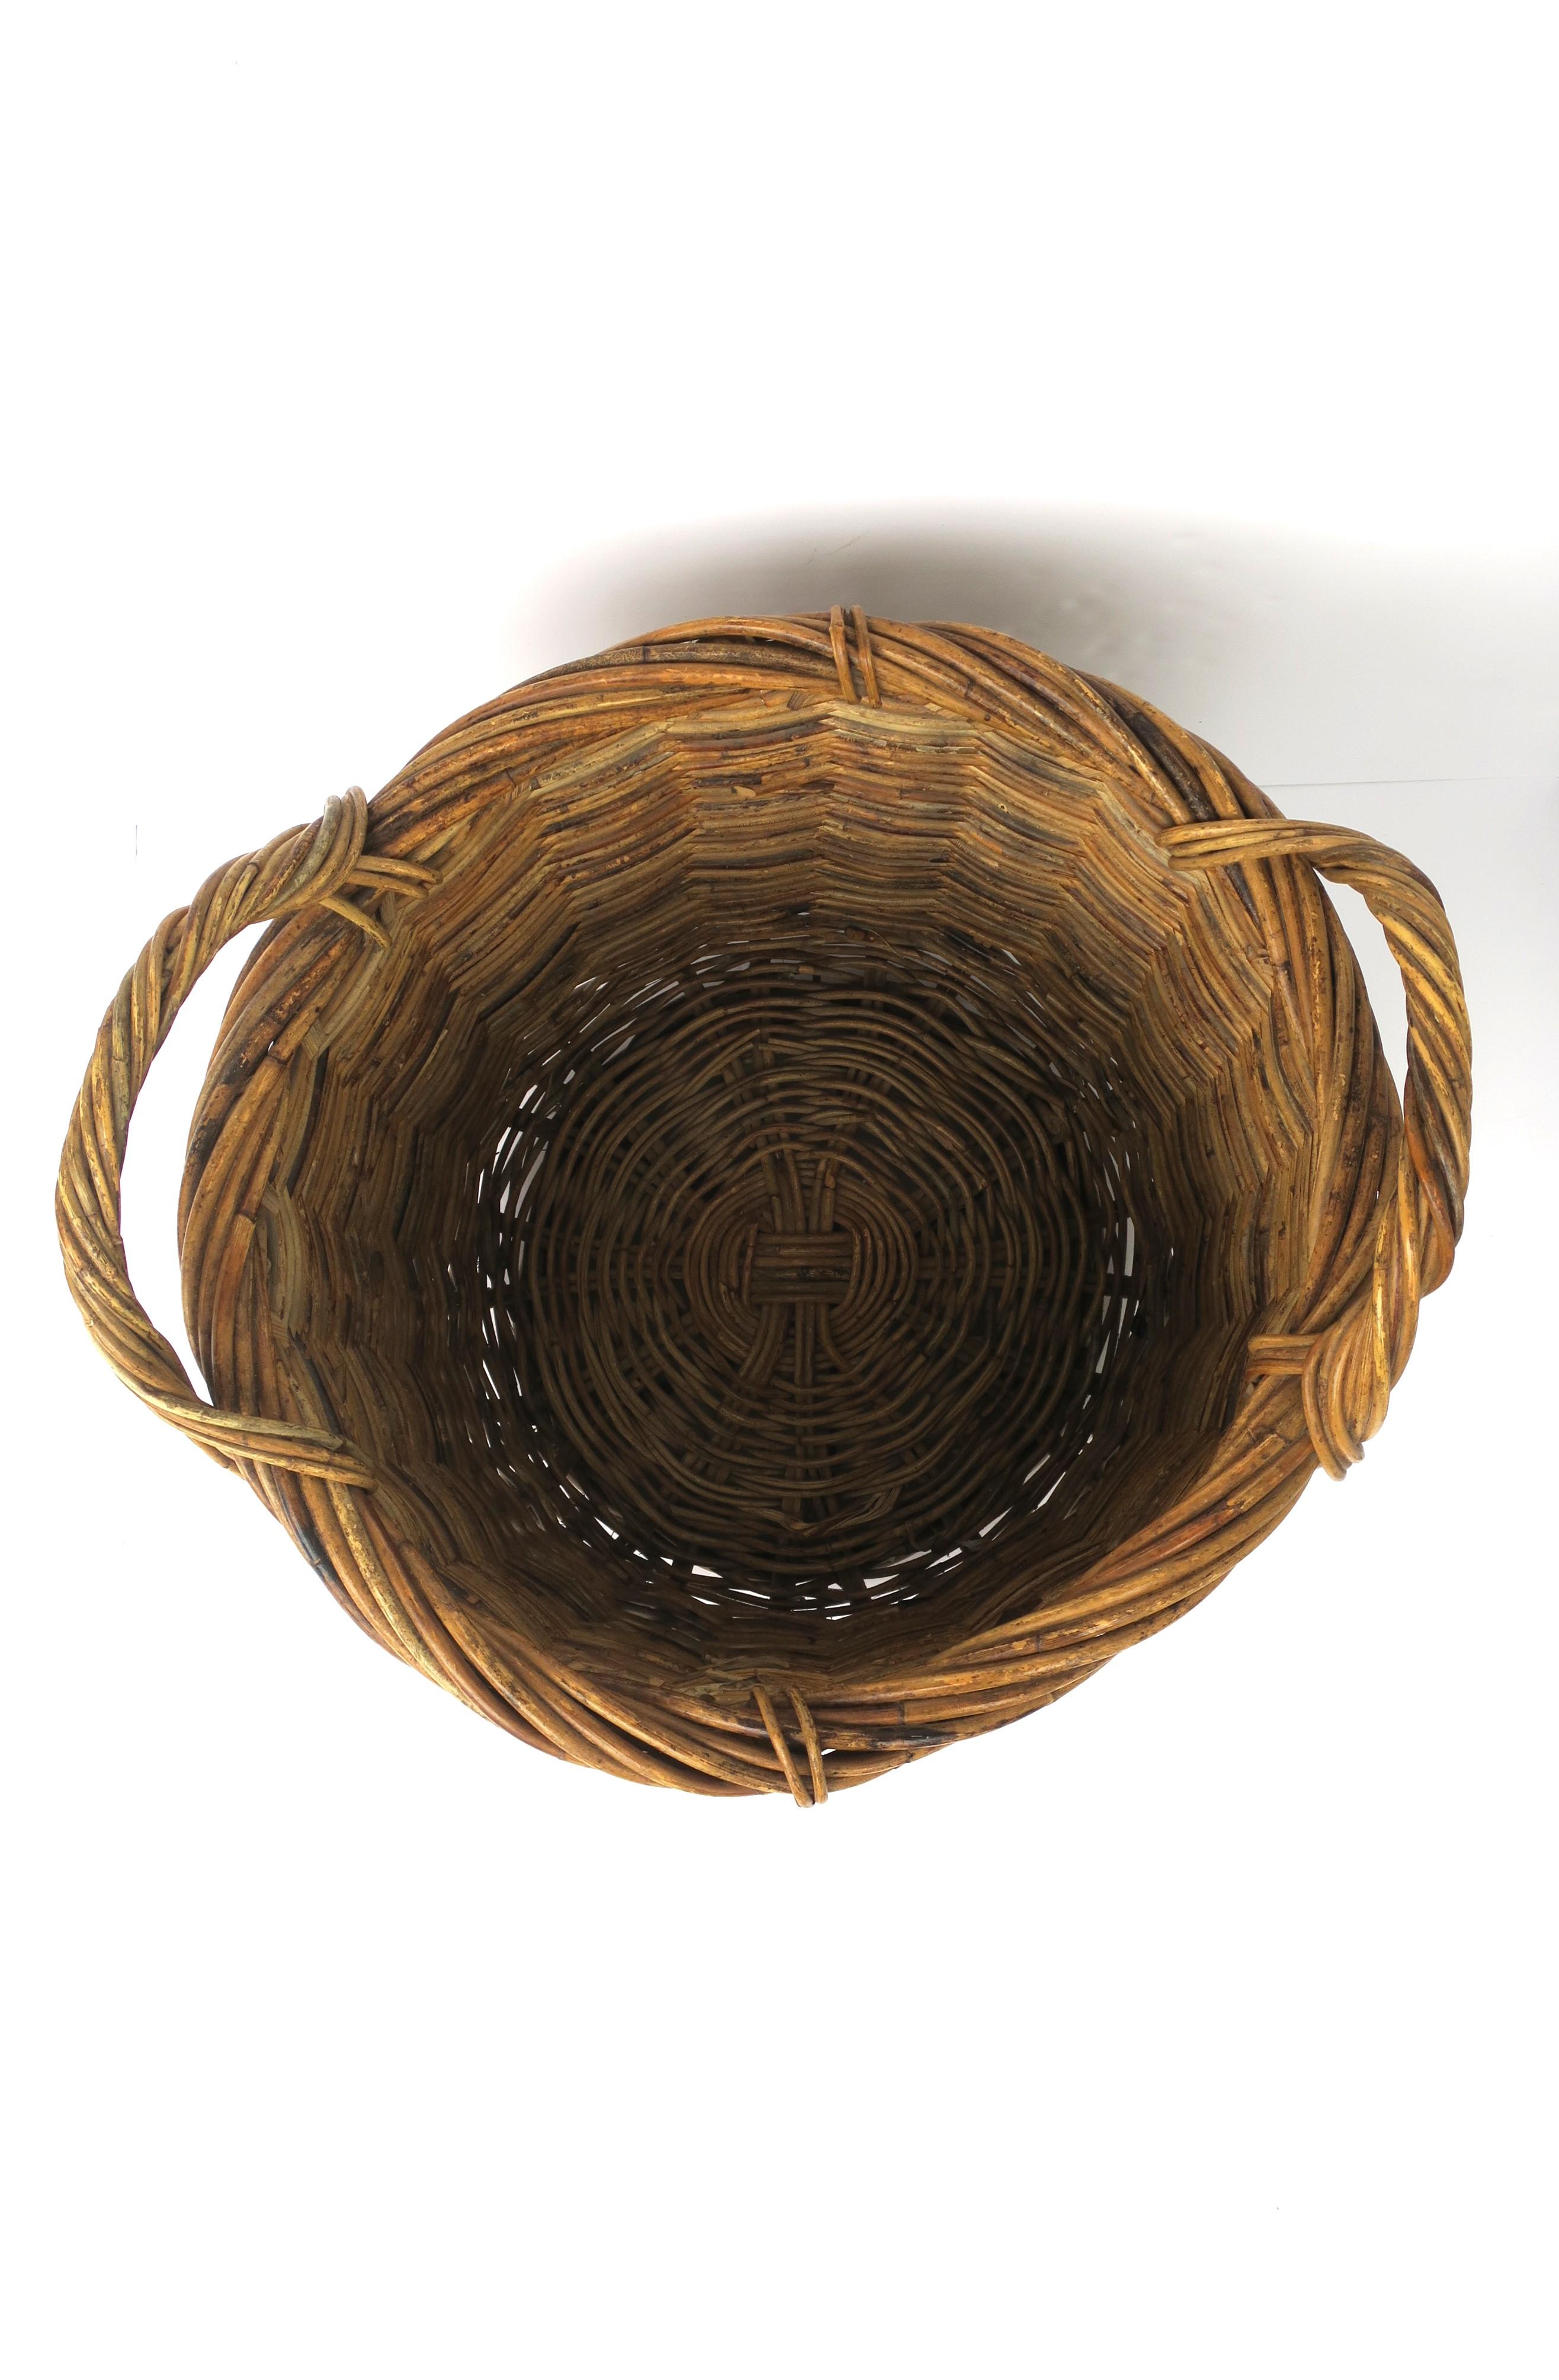 Wicker Basket Plant Potholder Cachepot or Storage For Sale 6